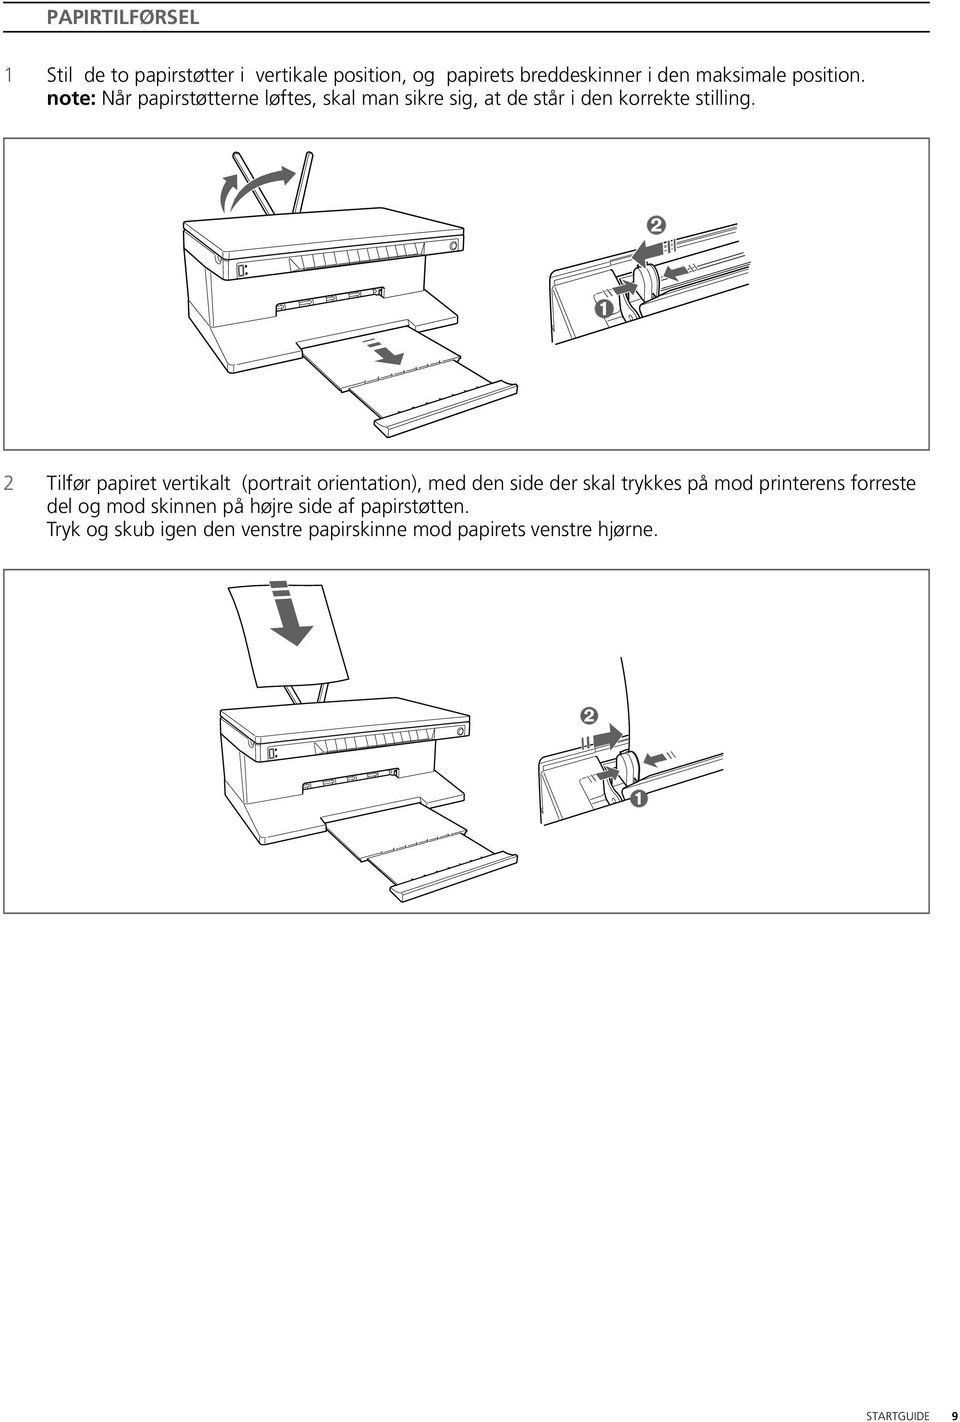 2 Tilfør papiret vertikalt (portrait orientation), med den side der skal trykkes på mod printerens forreste del